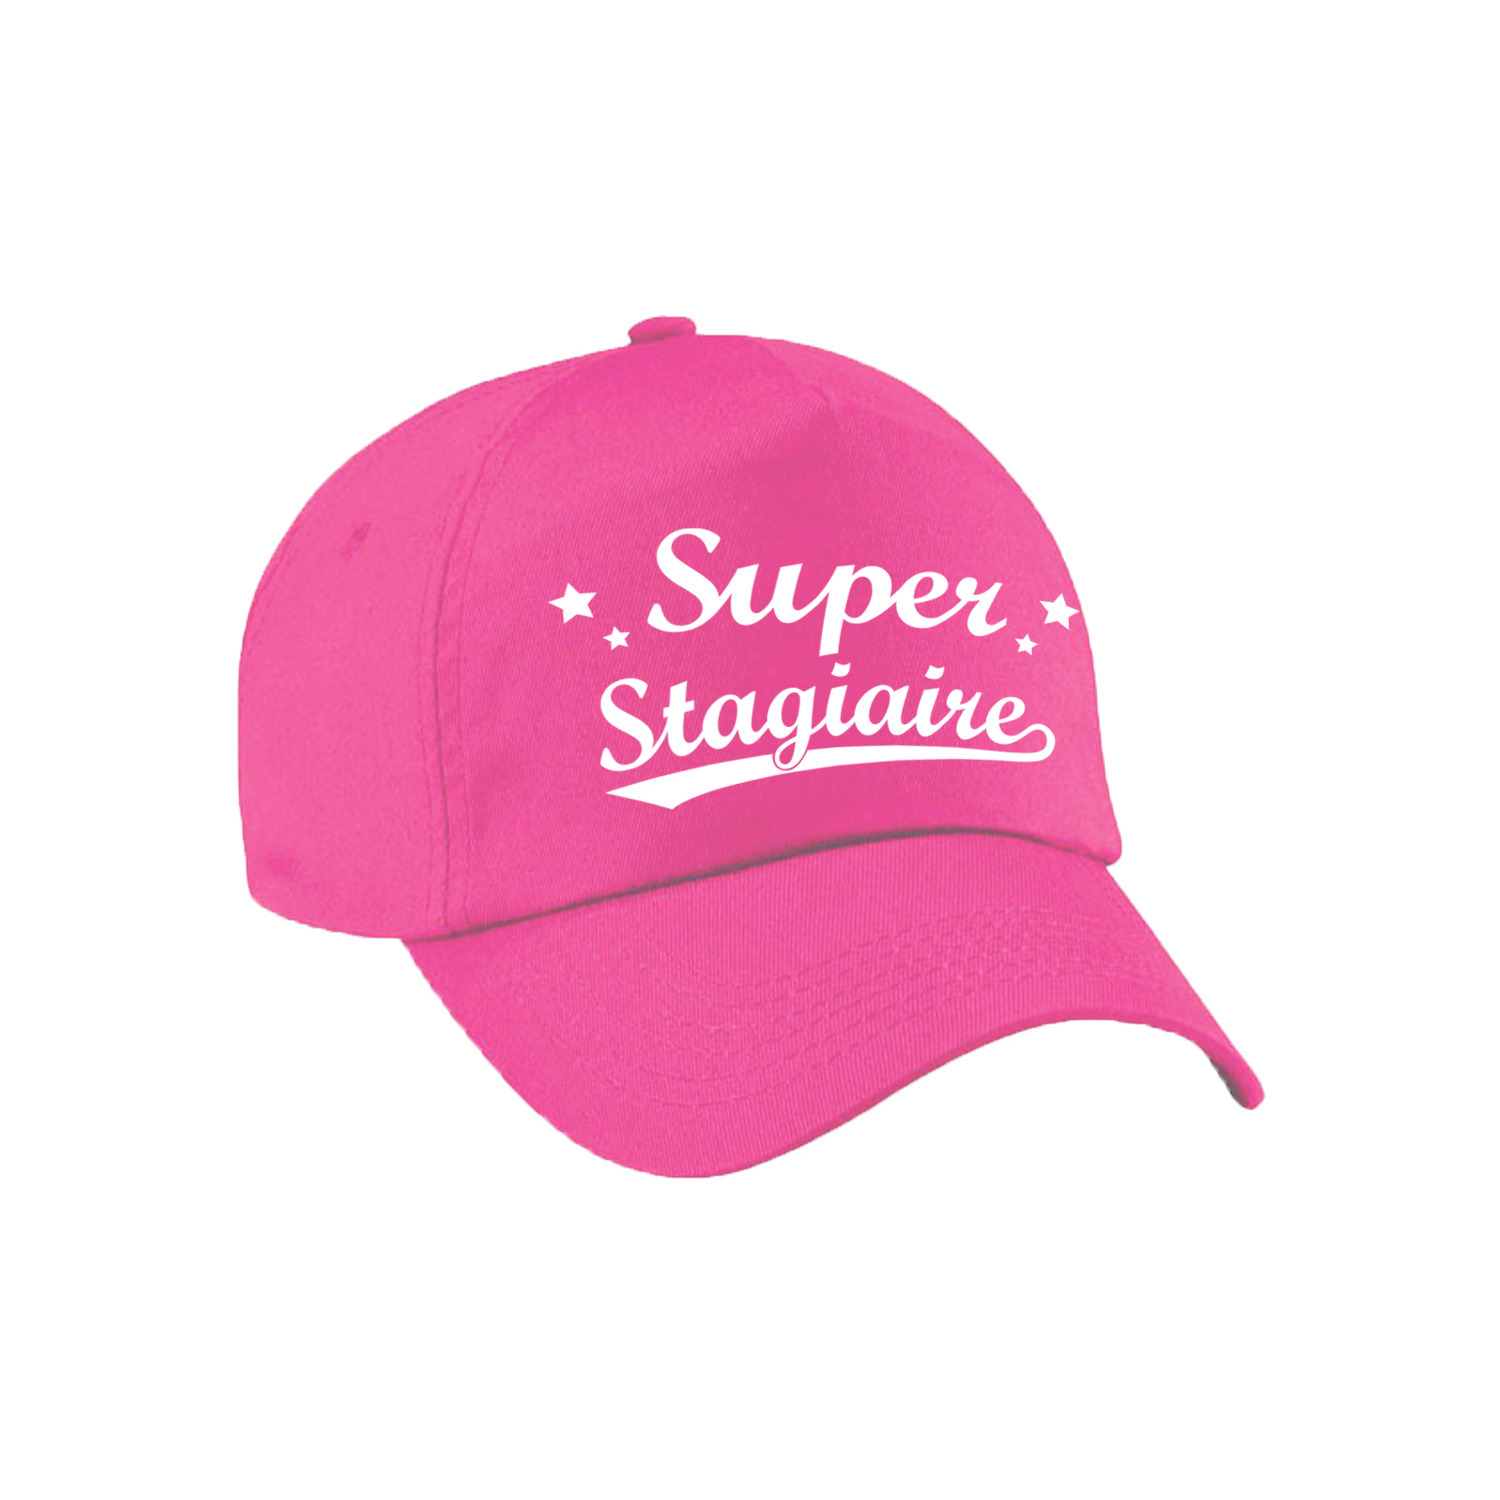 Super stagiaire cadeau pet -cap roze voor dames